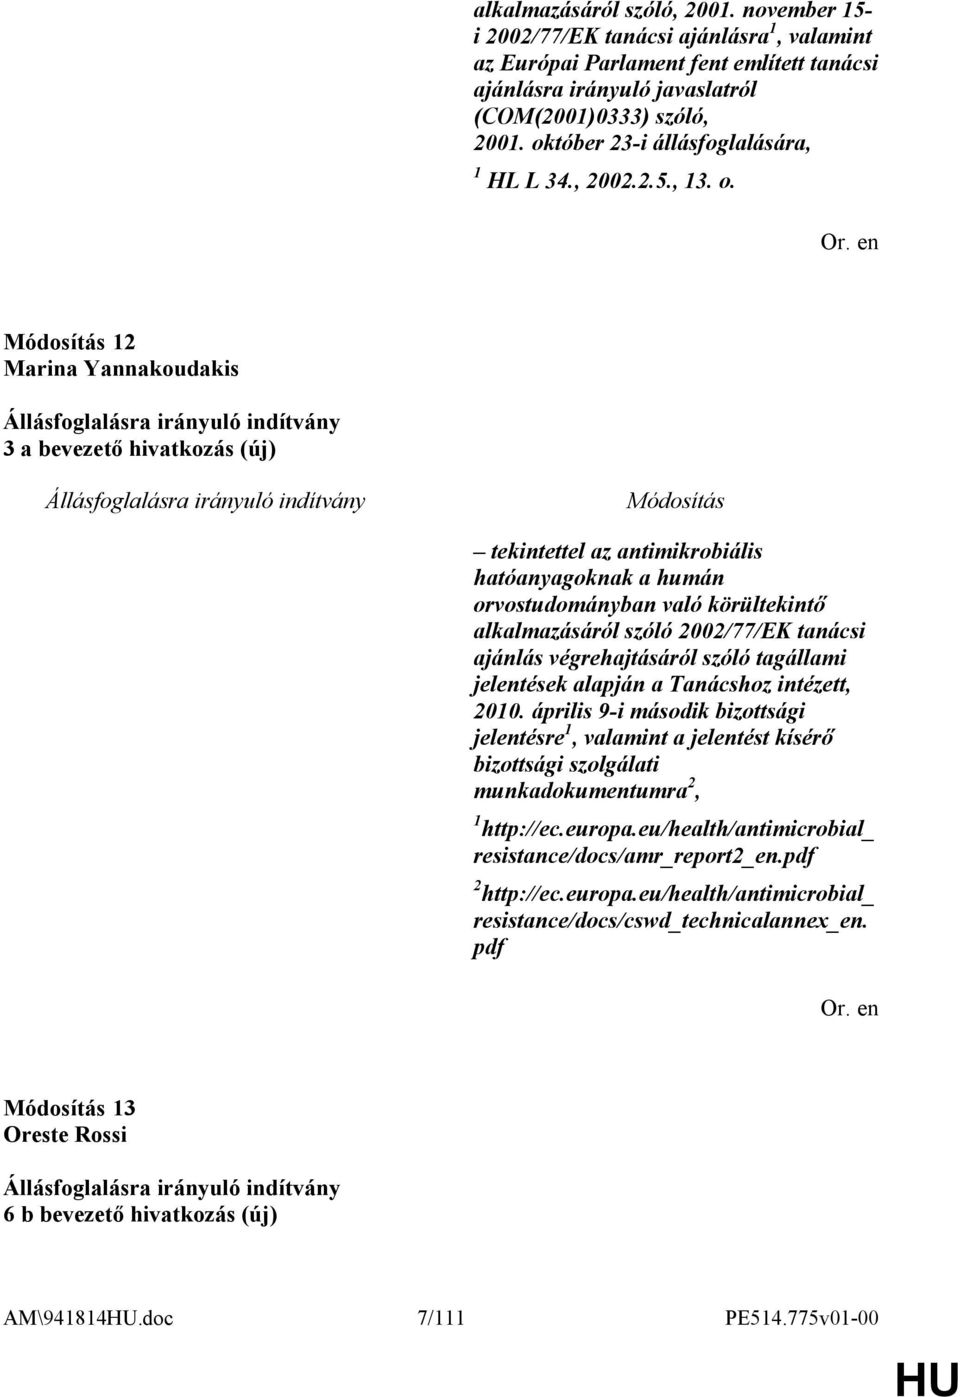 12 Marina Yannakoudakis 3 a bevezető hivatkozás (új) tekintettel az antimikrobiális hatóanyagoknak a humán orvostudományban való körültekintő alkalmazásáról szóló 2002/77/EK tanácsi ajánlás